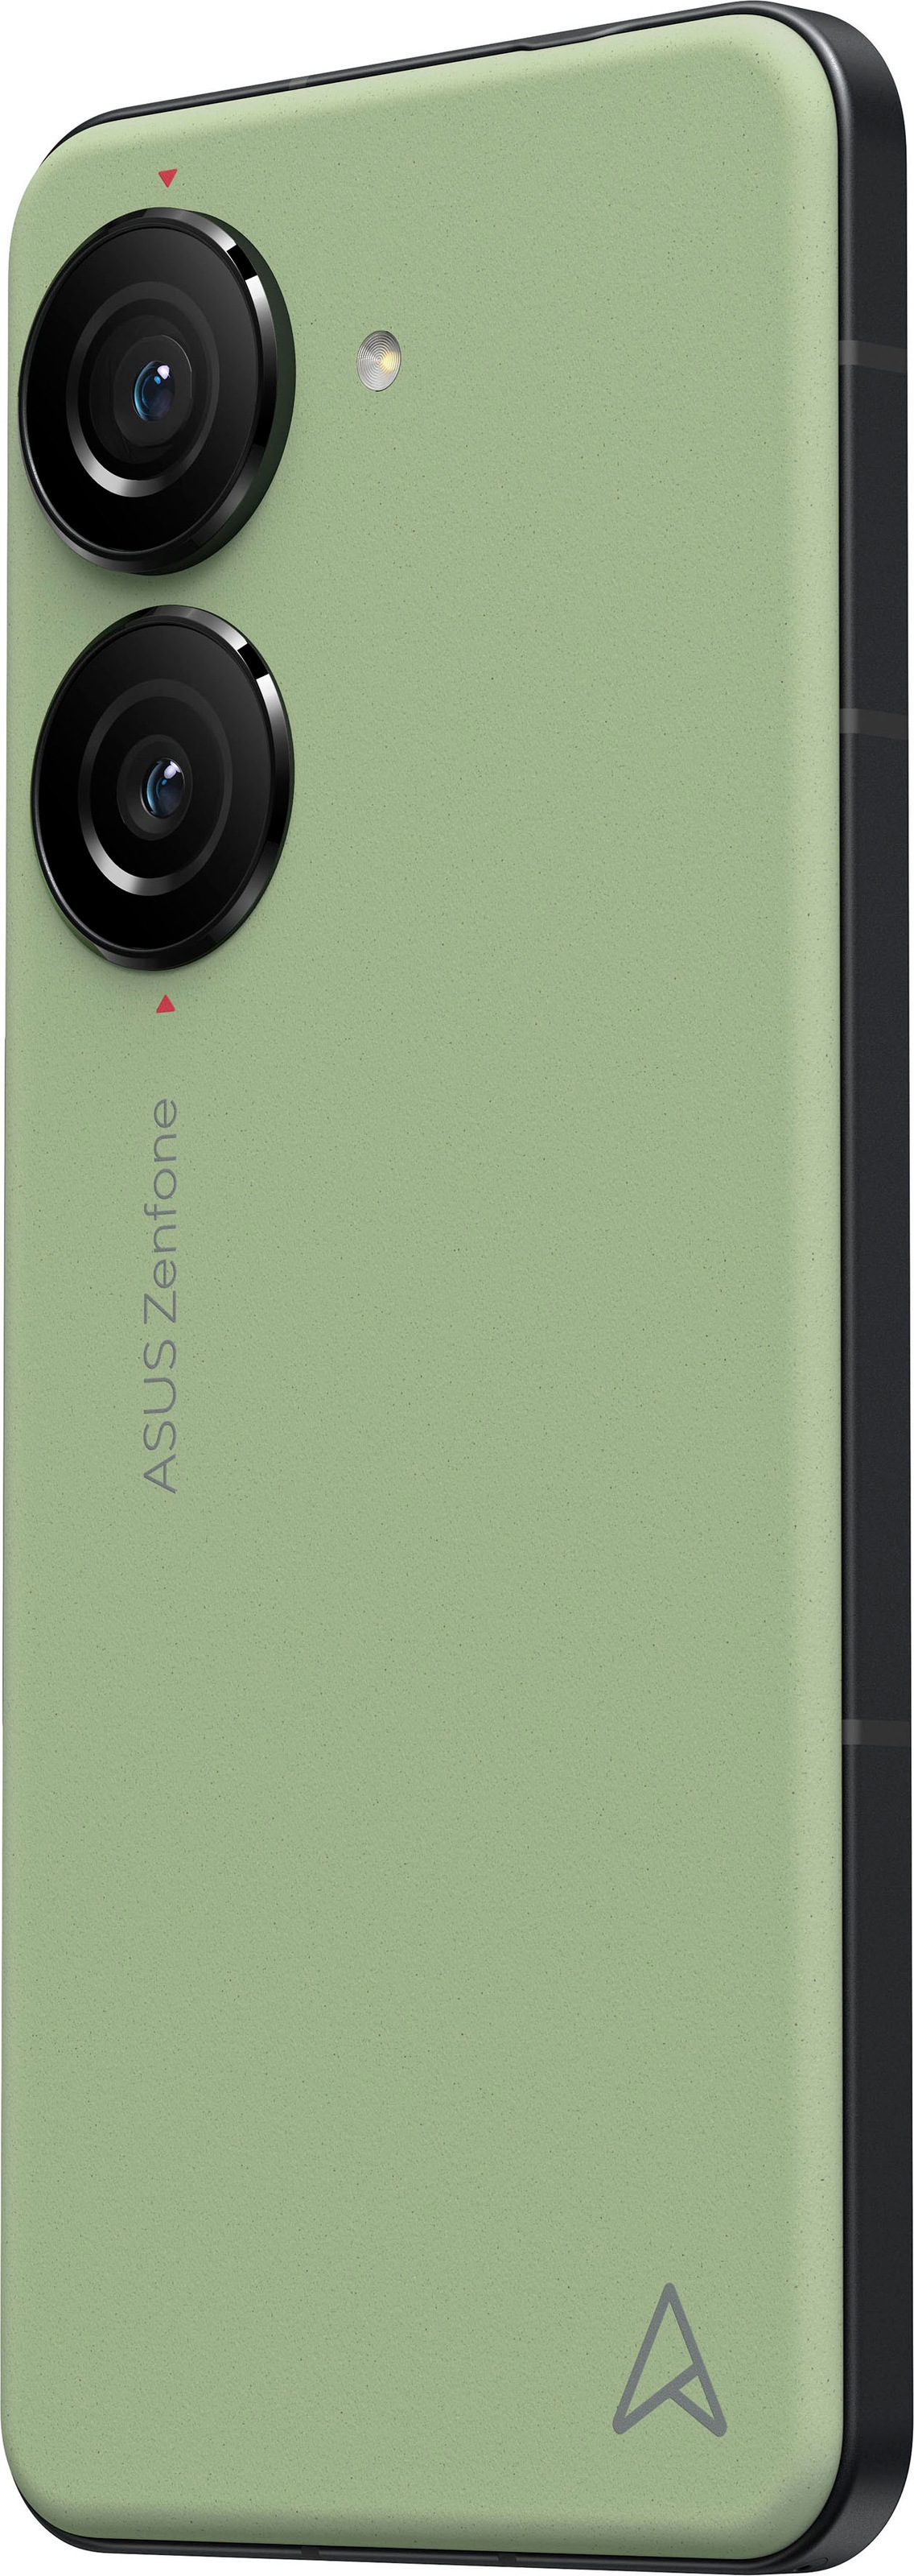 512 Kamera schwarz, 10«, 14,98 Smartphone kaufen »ZENFONE Asus Speicherplatz, 50 cm/5,9 online GB MP Zoll,